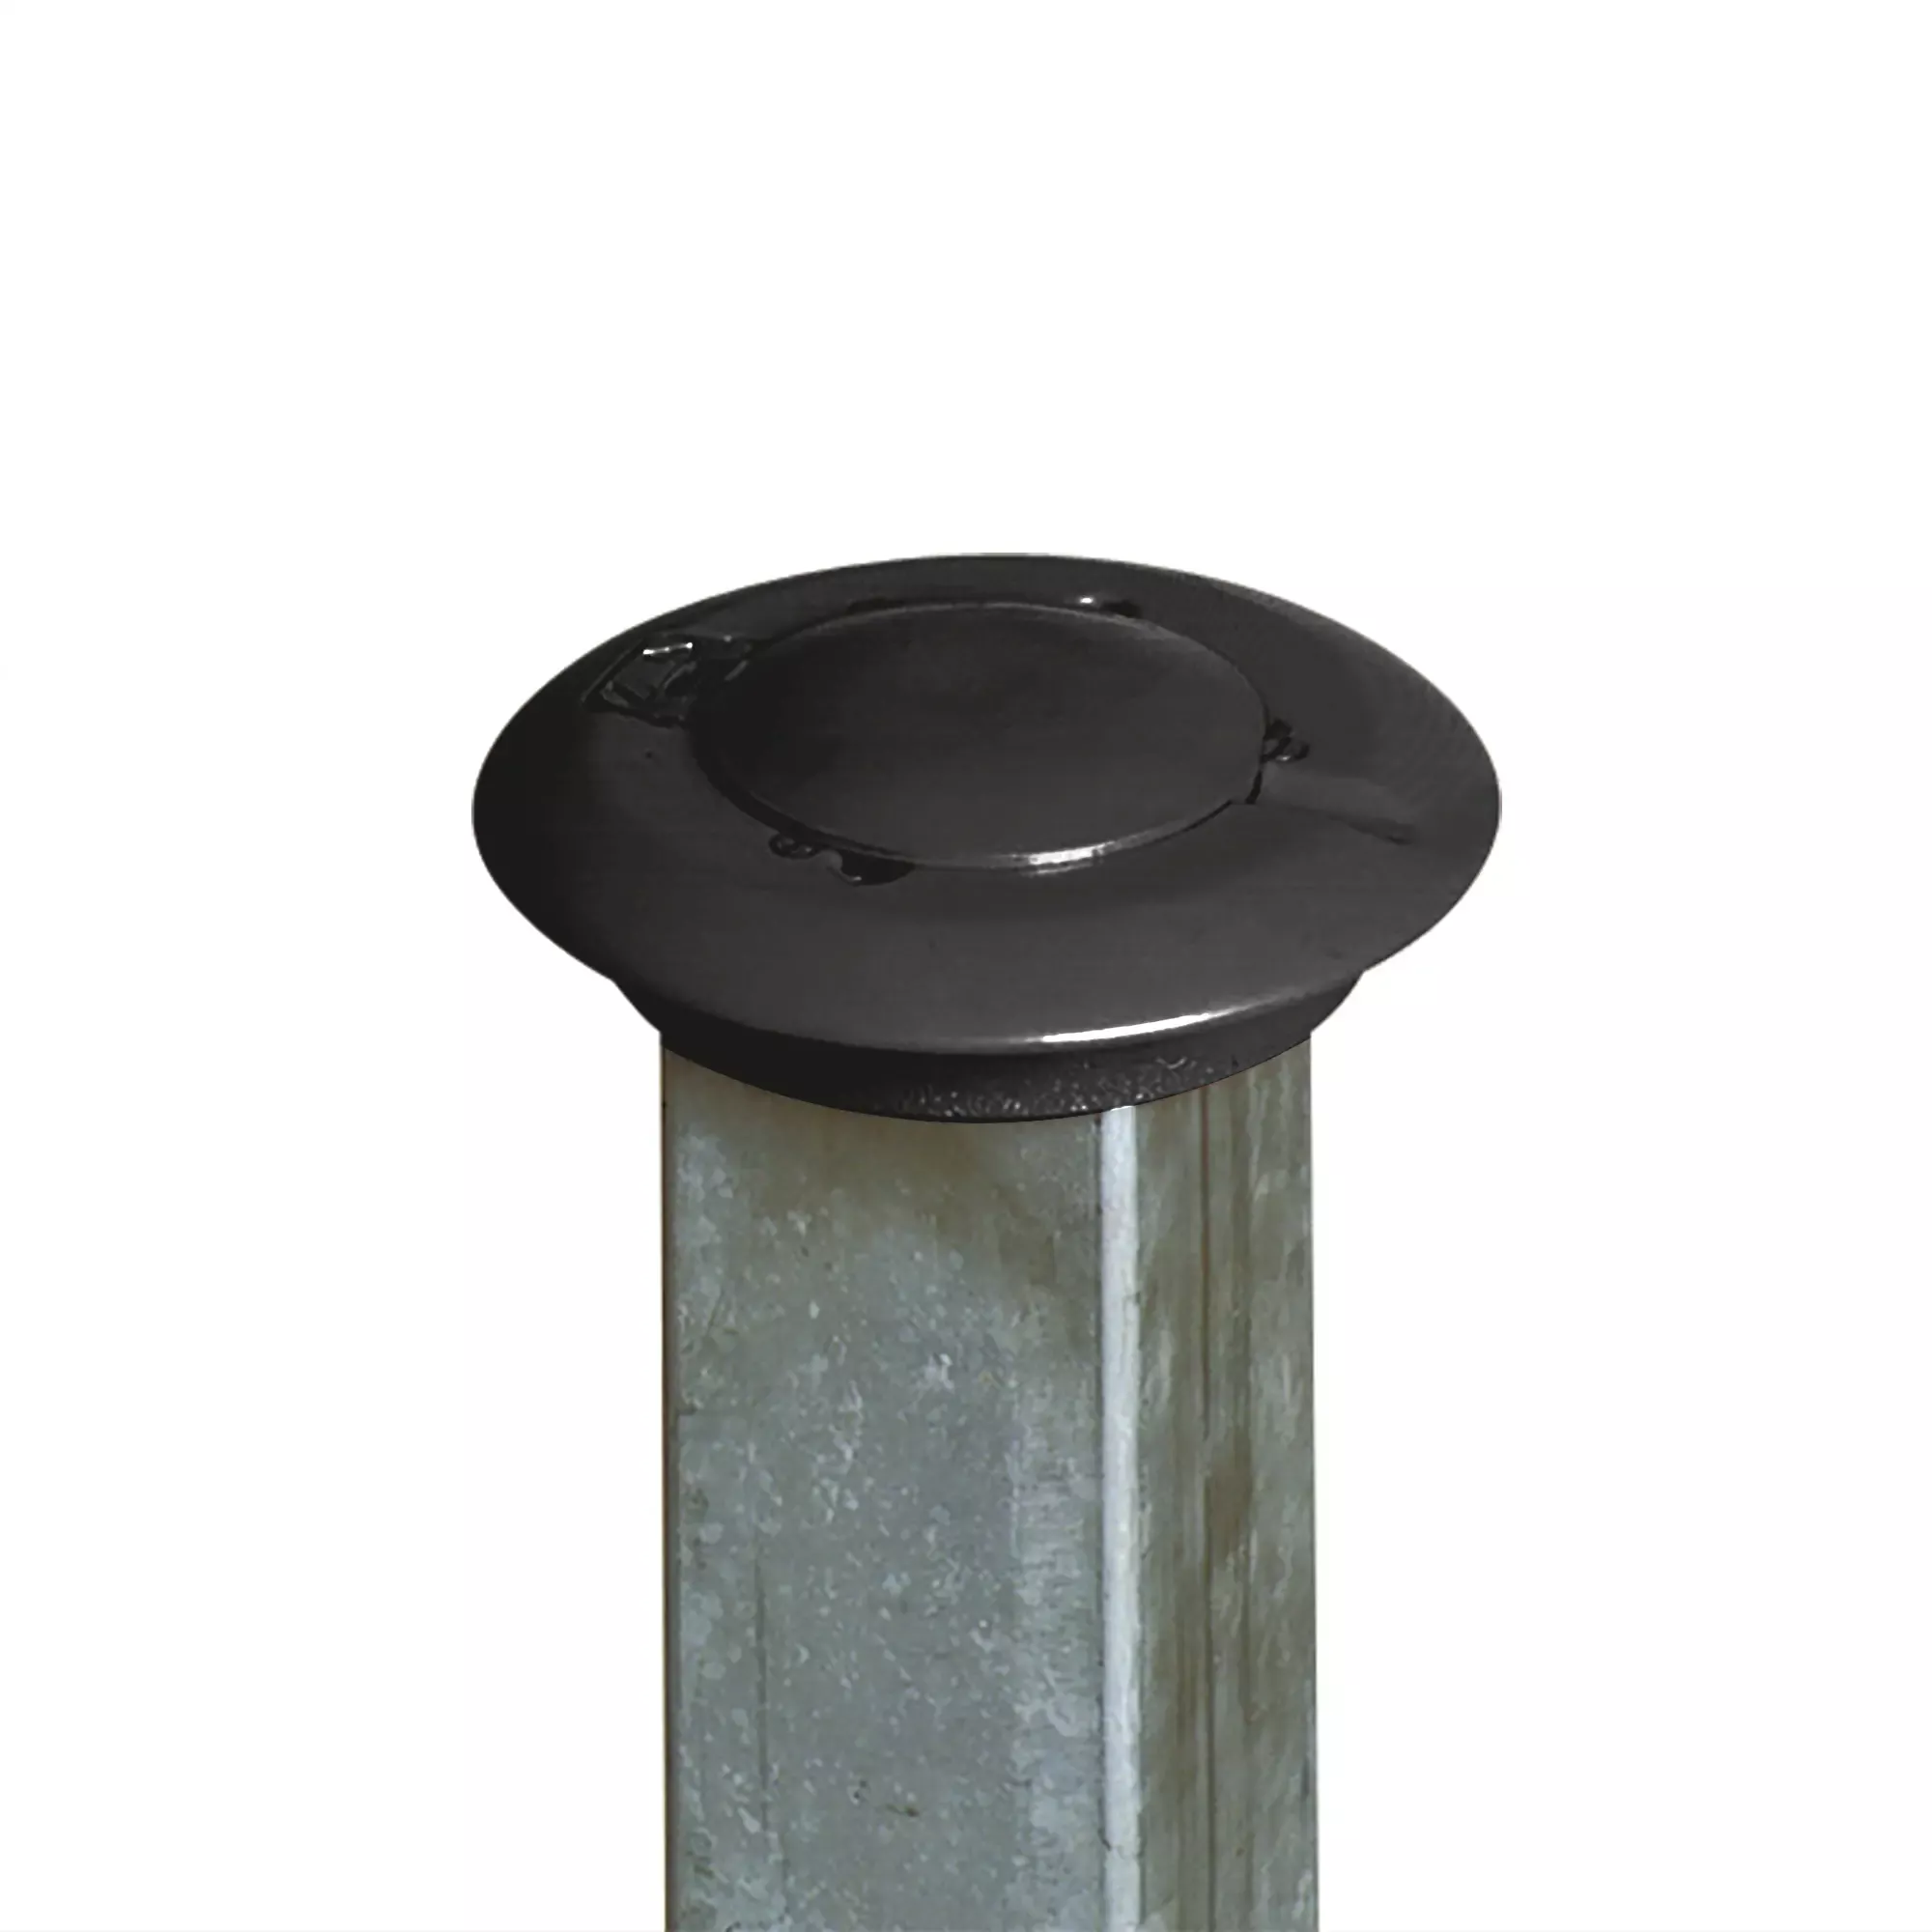 Sperrpfosten Paratlift, Ø 76 mm, aus Stahl, schwarz-gelb, halbautomatisch versenkbar